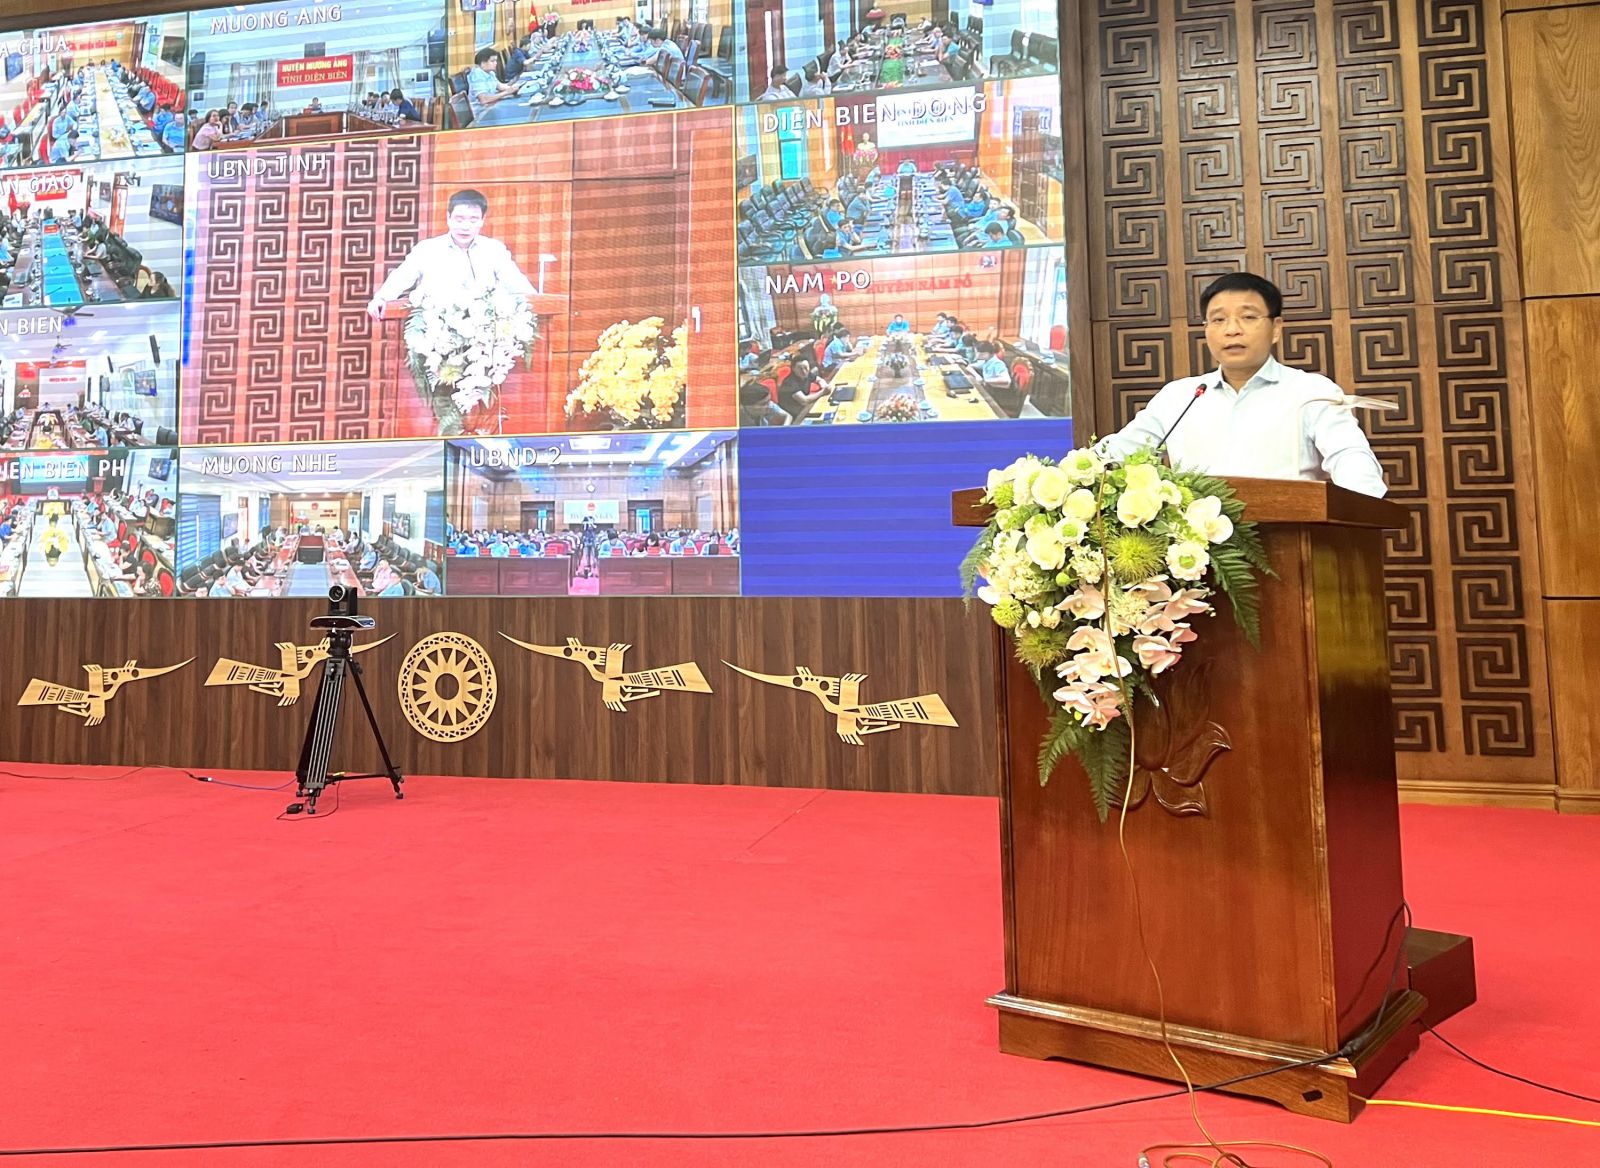 ông Nguyễn Văn Thắng, Bí thư tỉnh uỷ Điện Biên đặt mục tiêuquyết tâm cải thiện mạnh mẽ chỉ số PCI với mục tiêu vươn lên trong top 30 tỉnh/thành phối trong bảng xếp hạng PCI